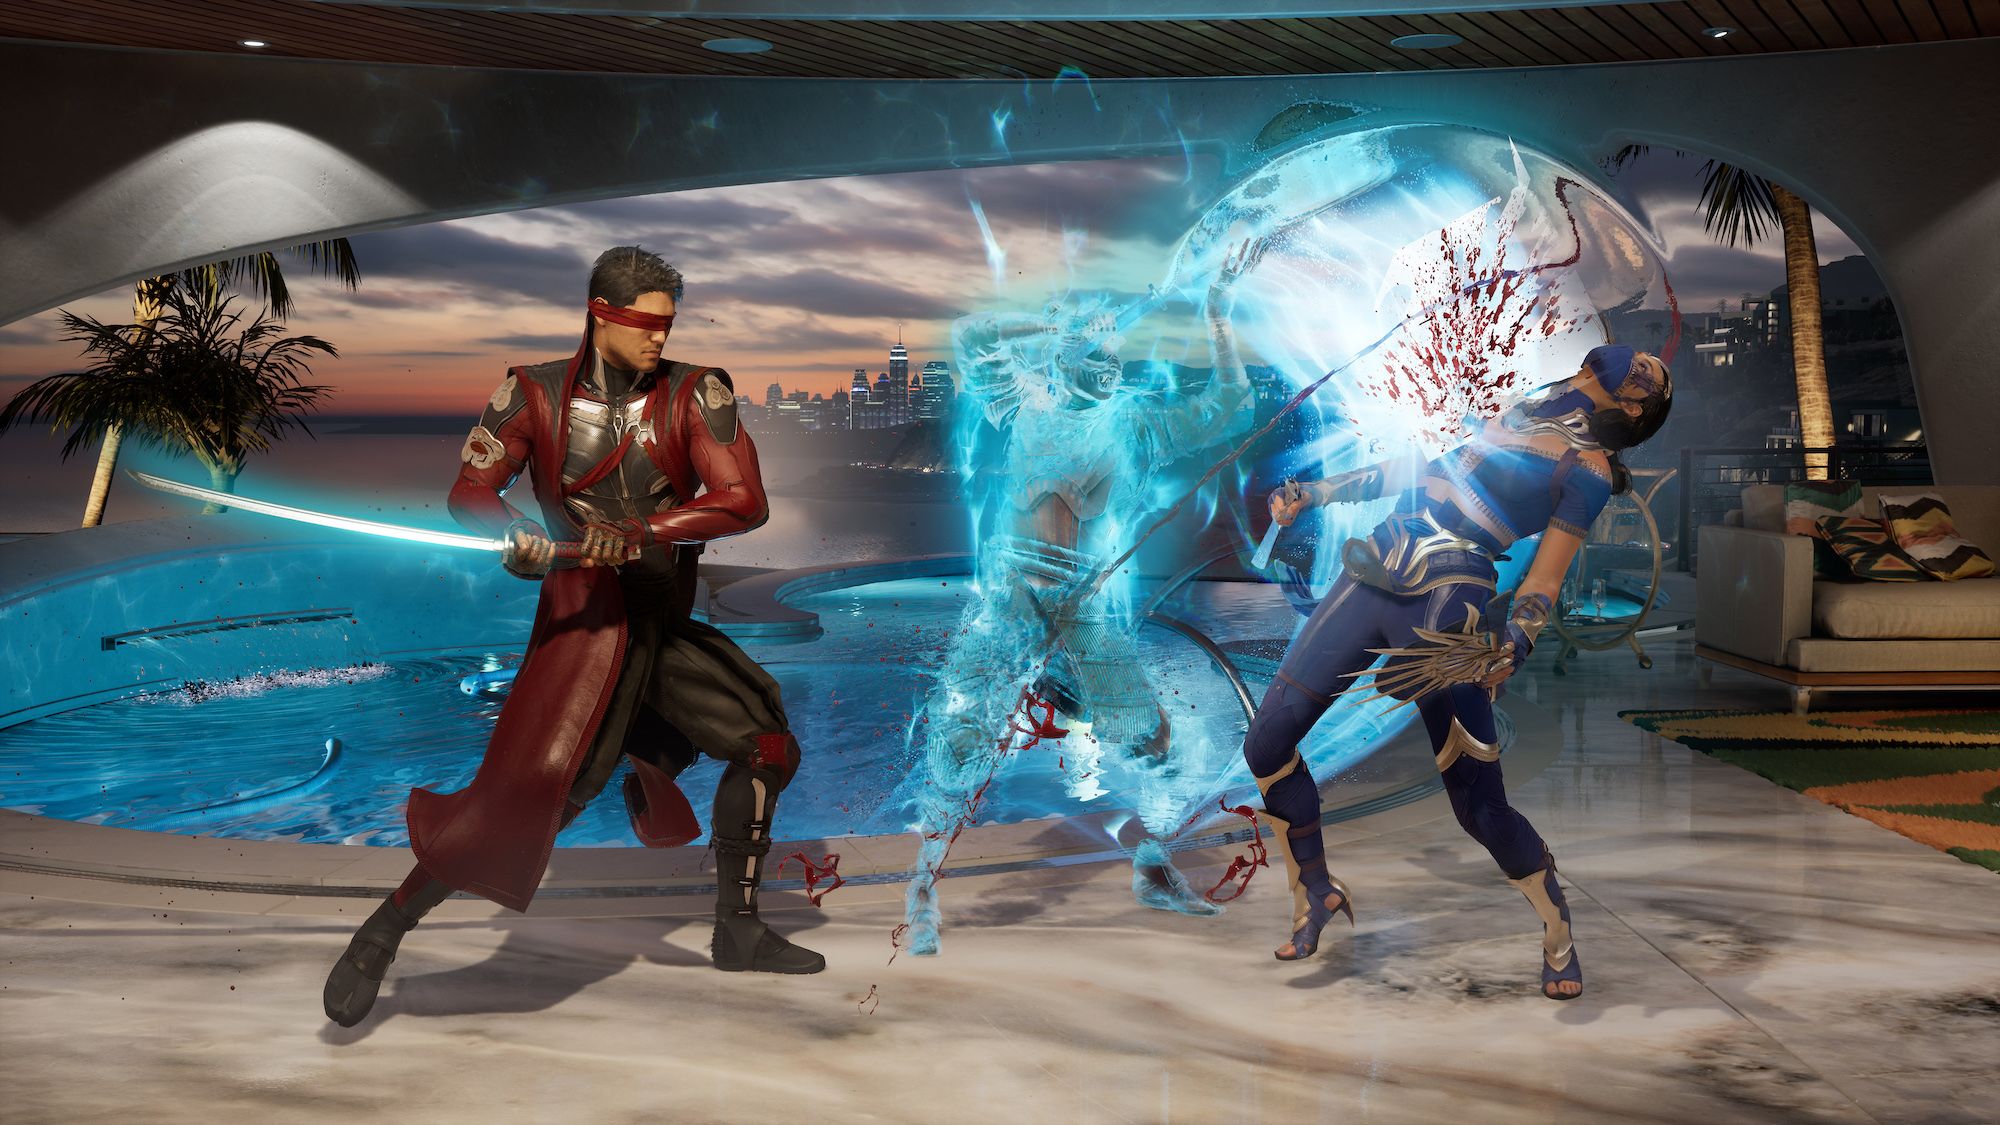 Mortal Kombat Reveal Set For Thursday - GameSpot